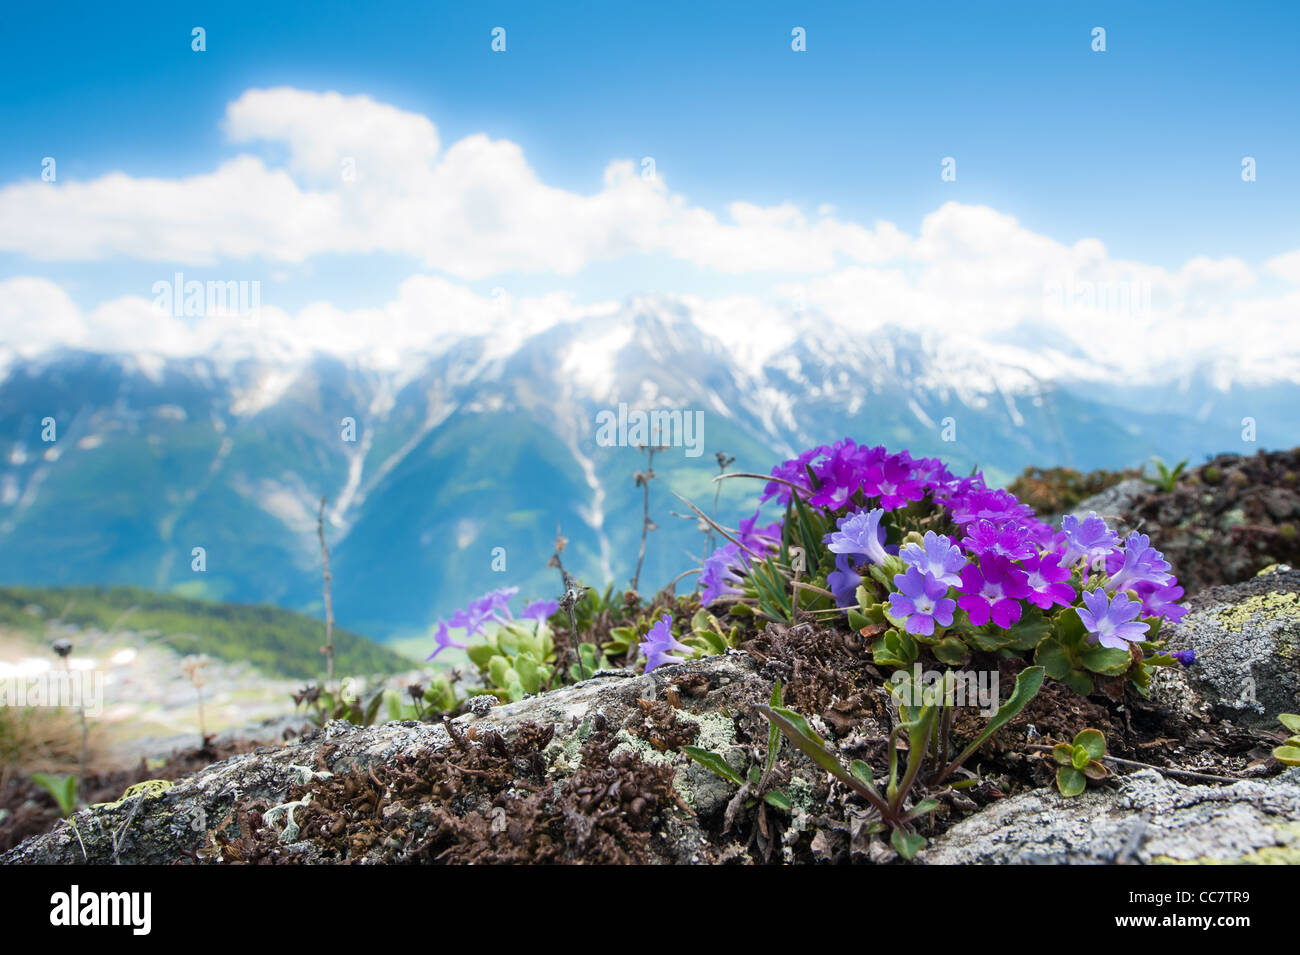 Rosa fiori alpini in primavera su una roccia con panorama di montagna in background. Fiescheralp, Vallese, Svizzera Foto Stock